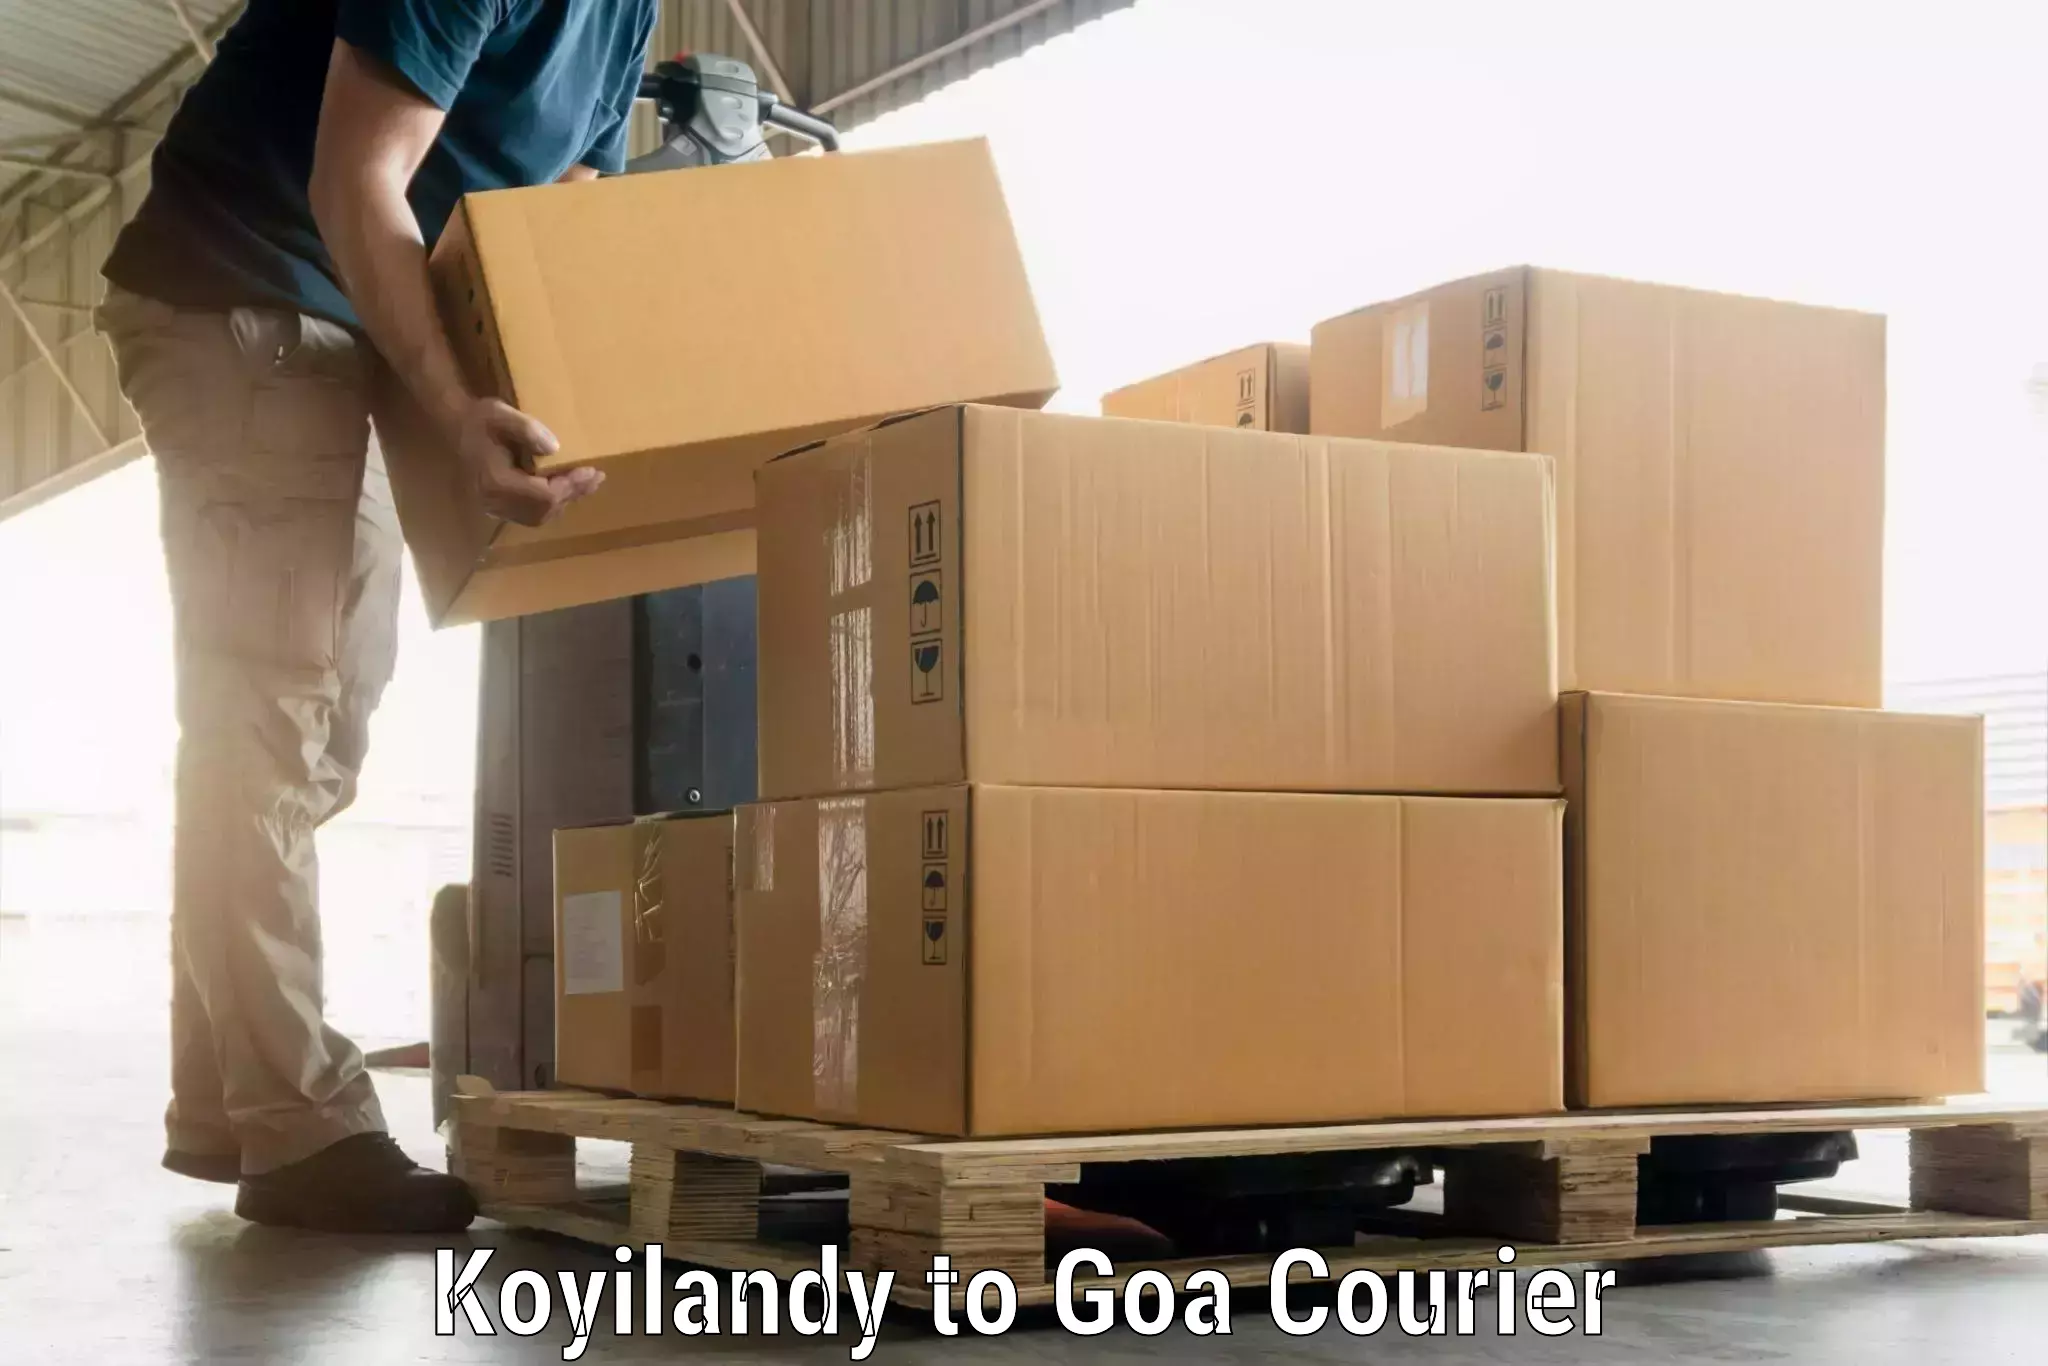 Luggage shipment specialists in Koyilandy to Vasco da Gama